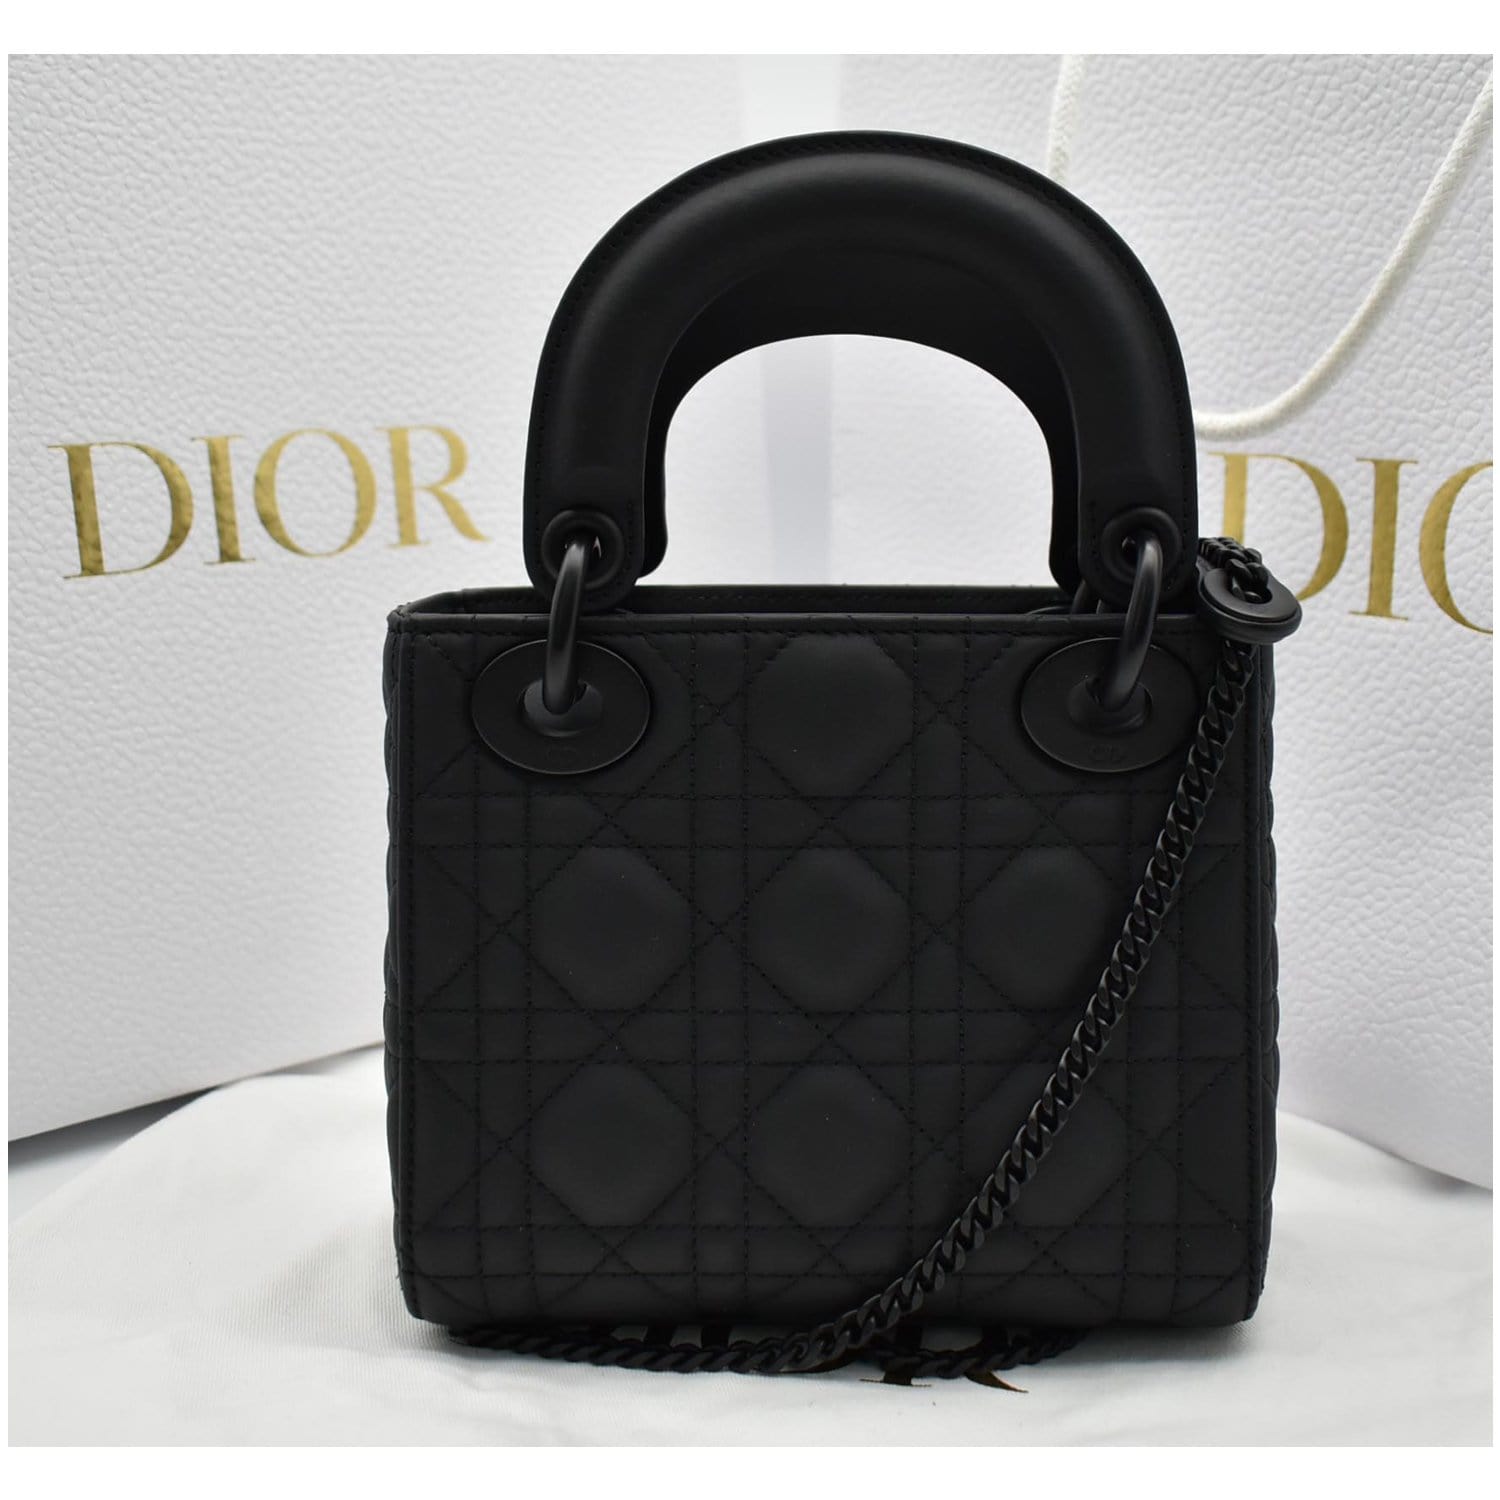 Dior - Lady Dior Clutch in Ultra-Matte Calfskin in Black